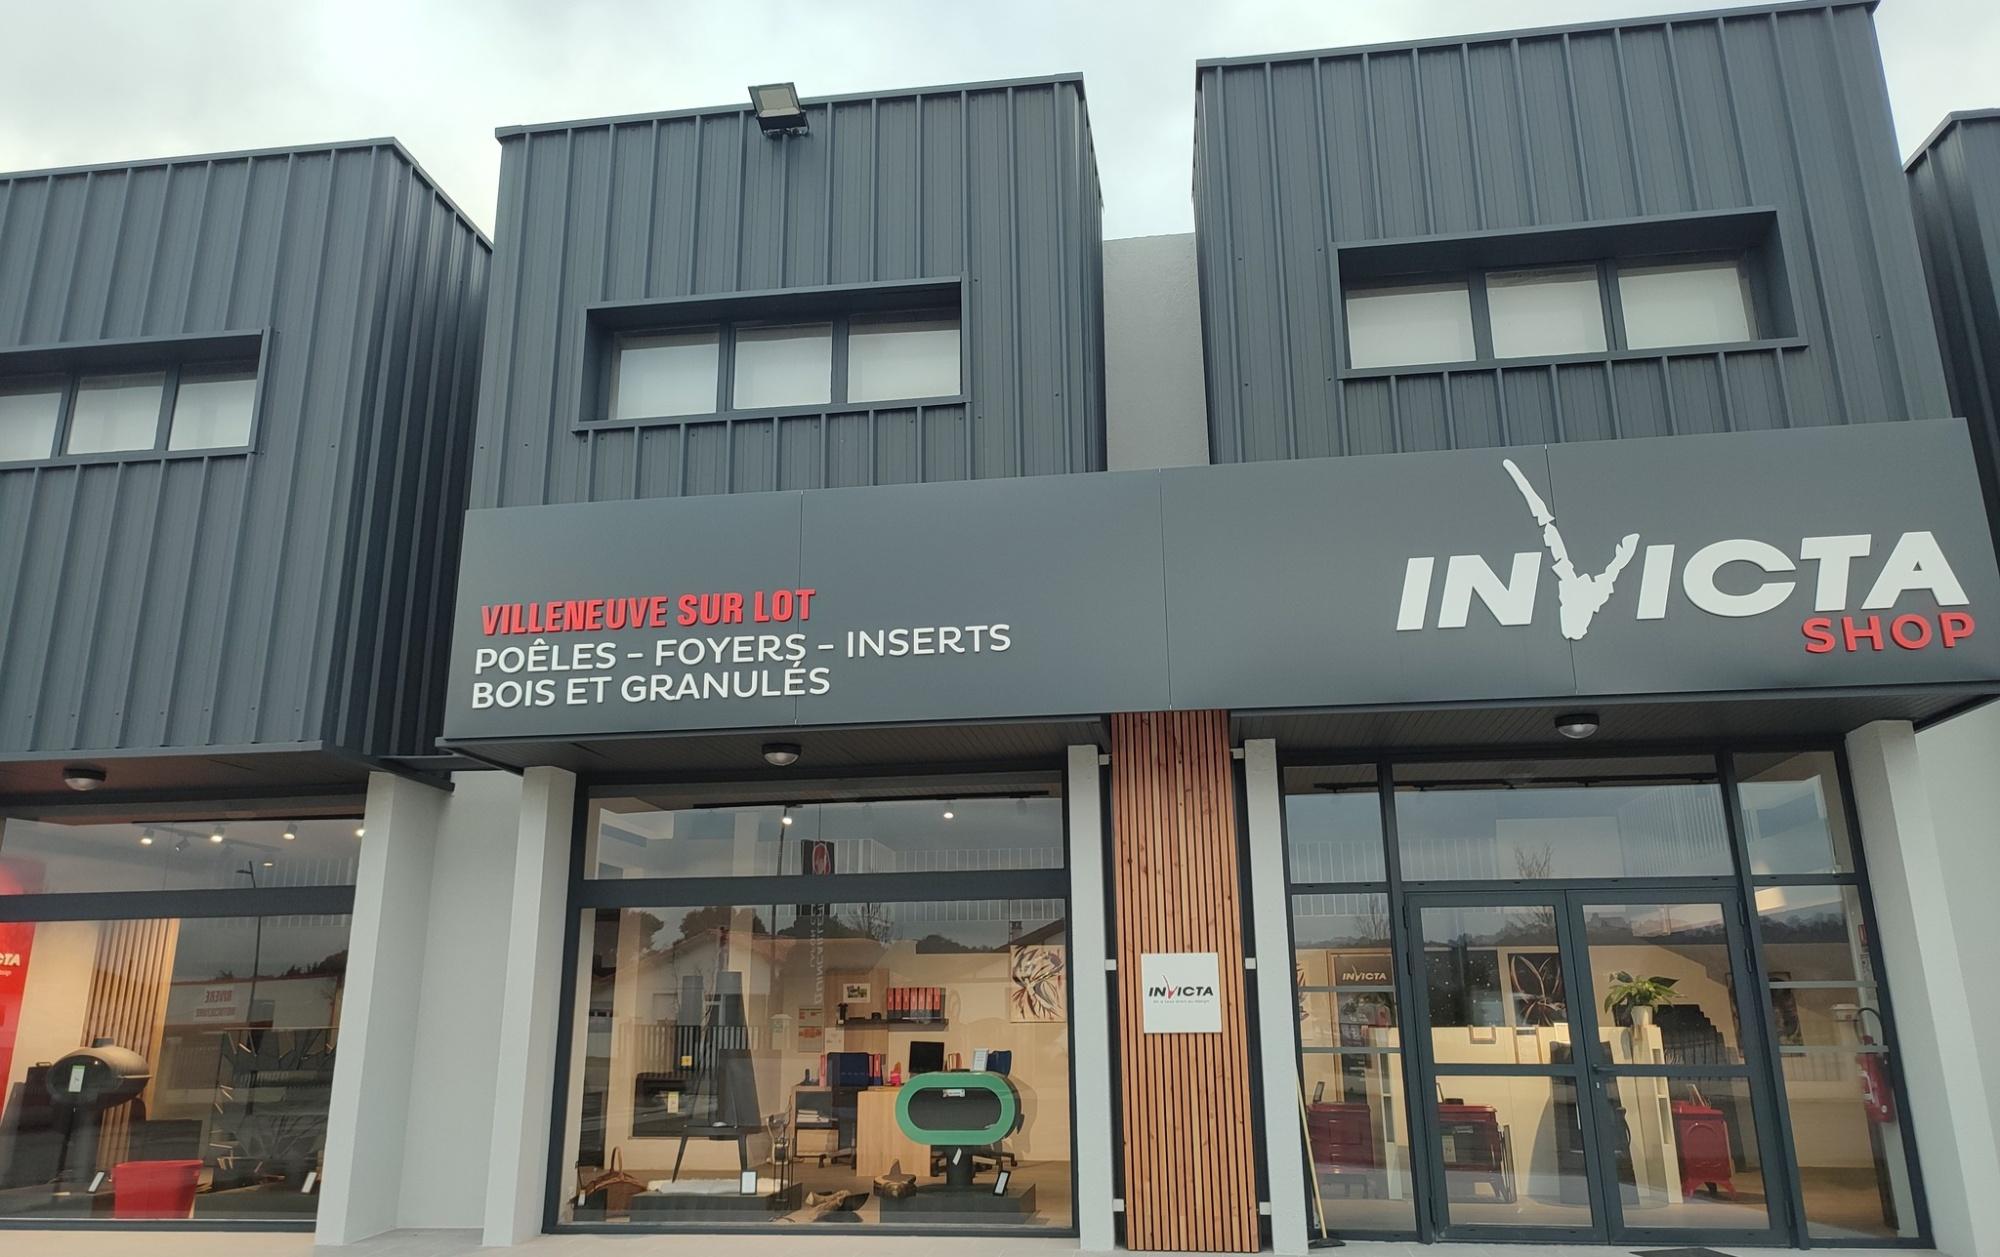 Invicta Shop Villeneuve Sur Lot Bias